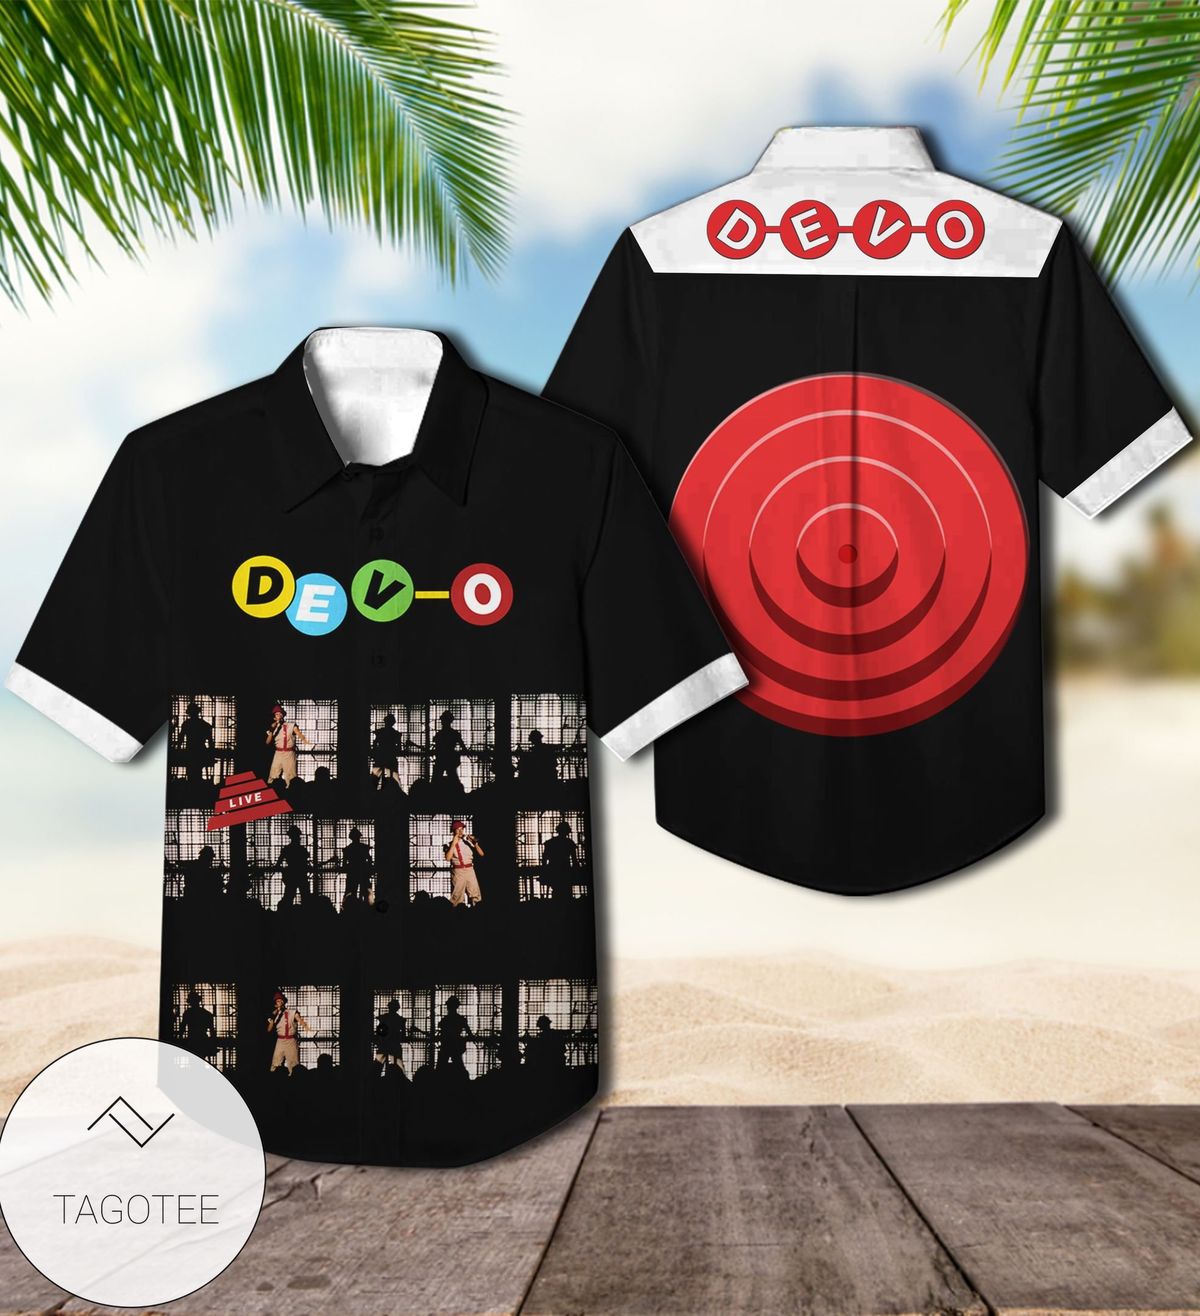 Dev-o Live Album Cover Hawaiian Shirt